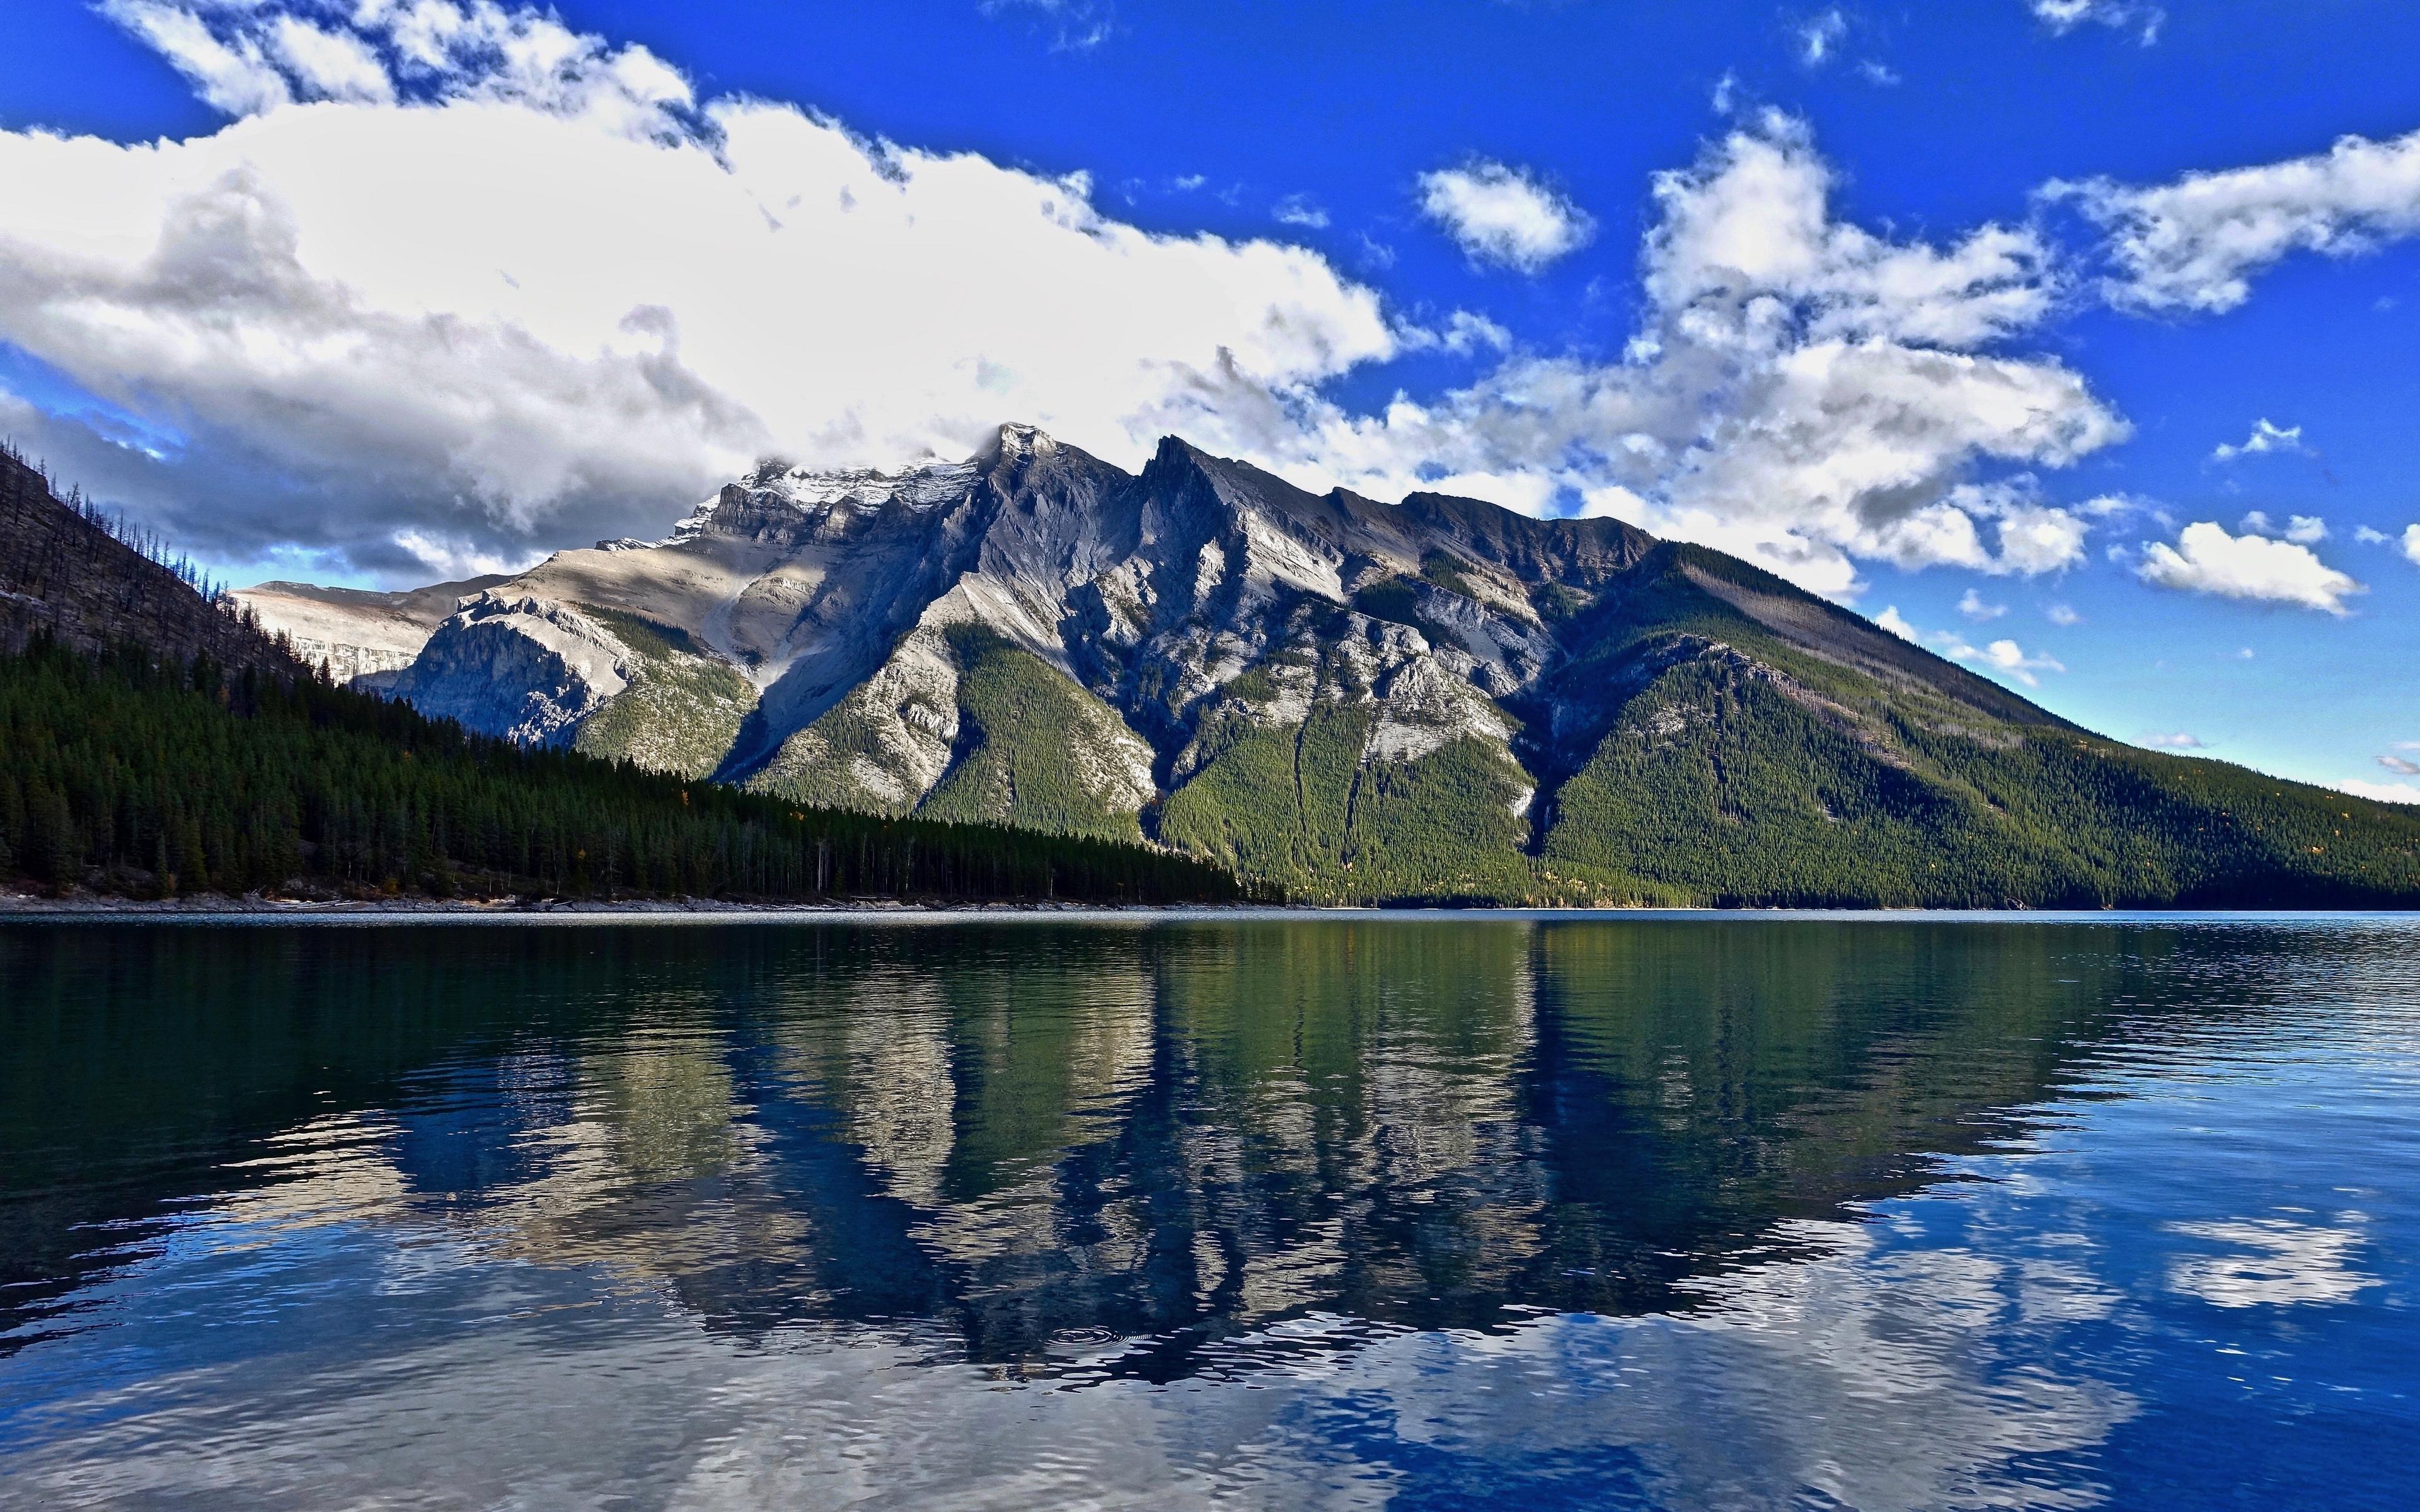 Download wallpaper 3840x2400 mountain, lake, reflection 4k